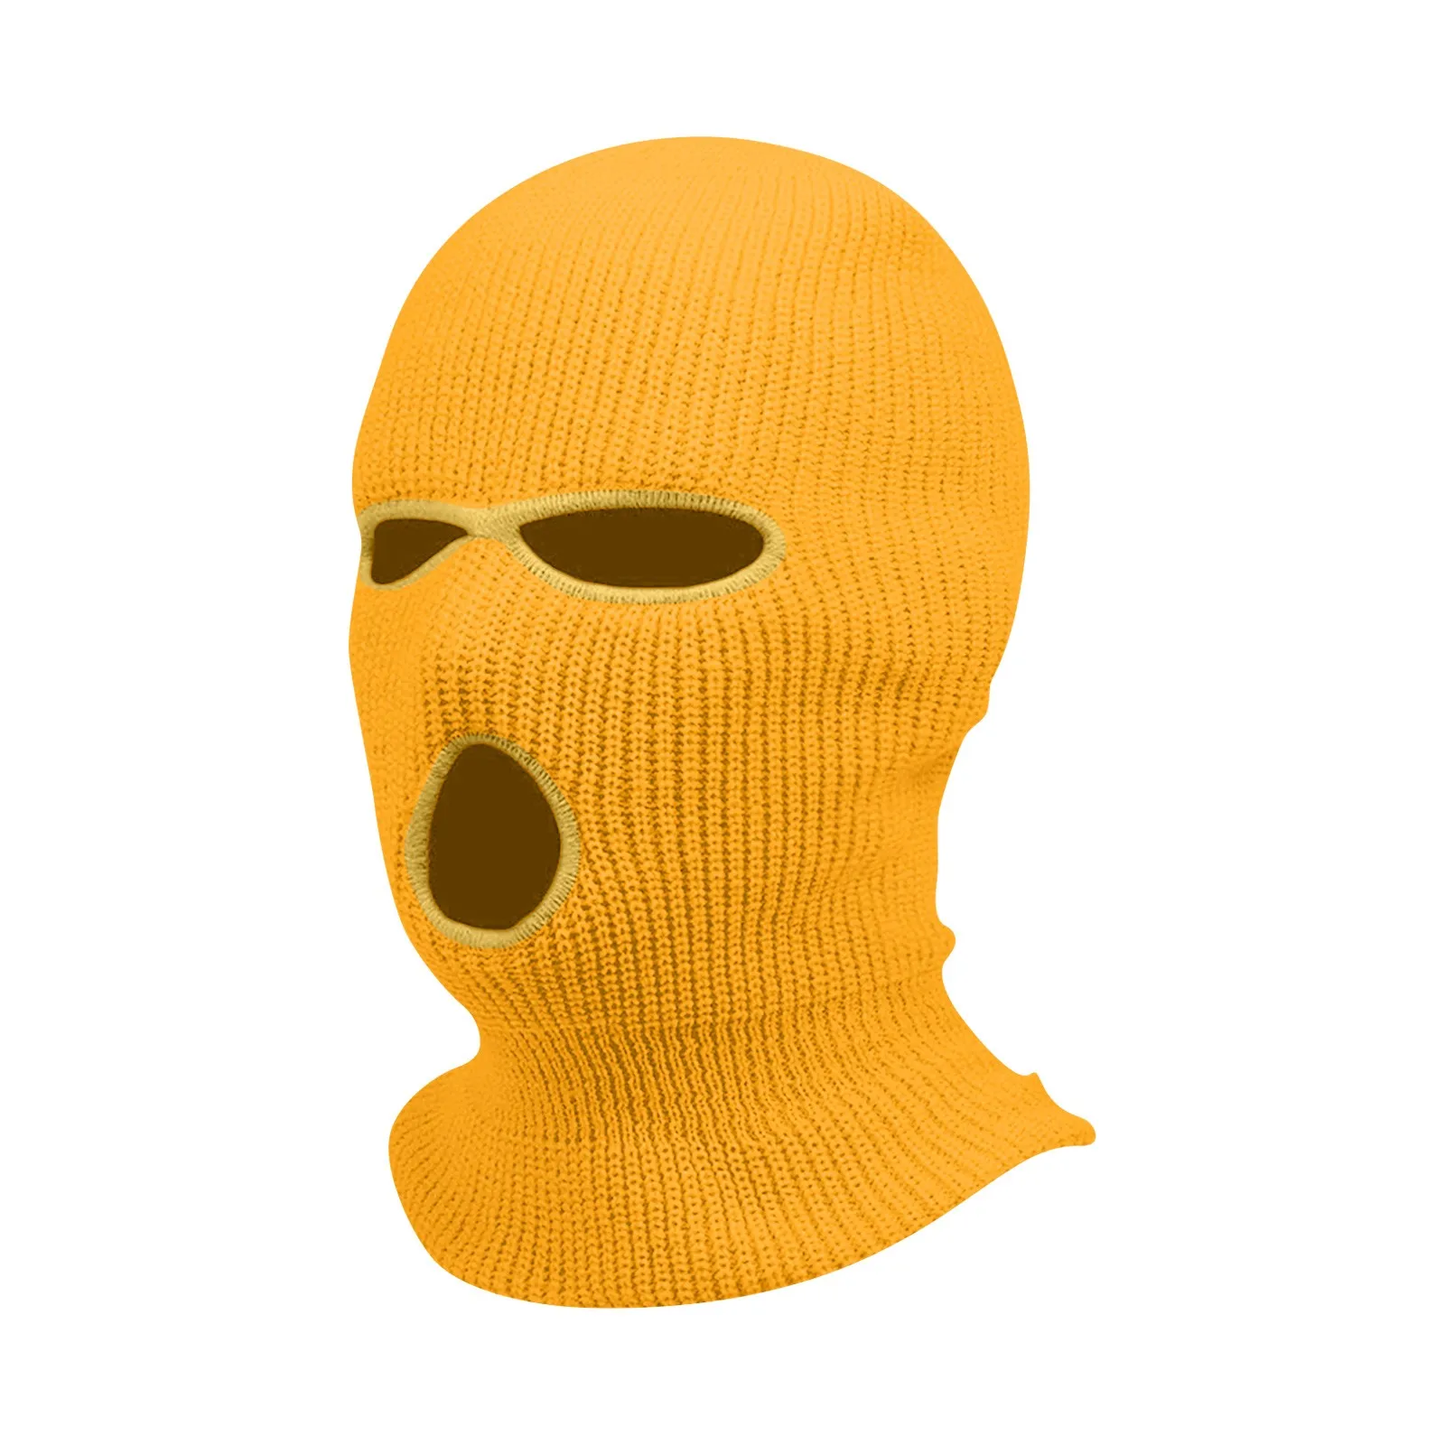 Hyper Yellow Skimask Balaclava